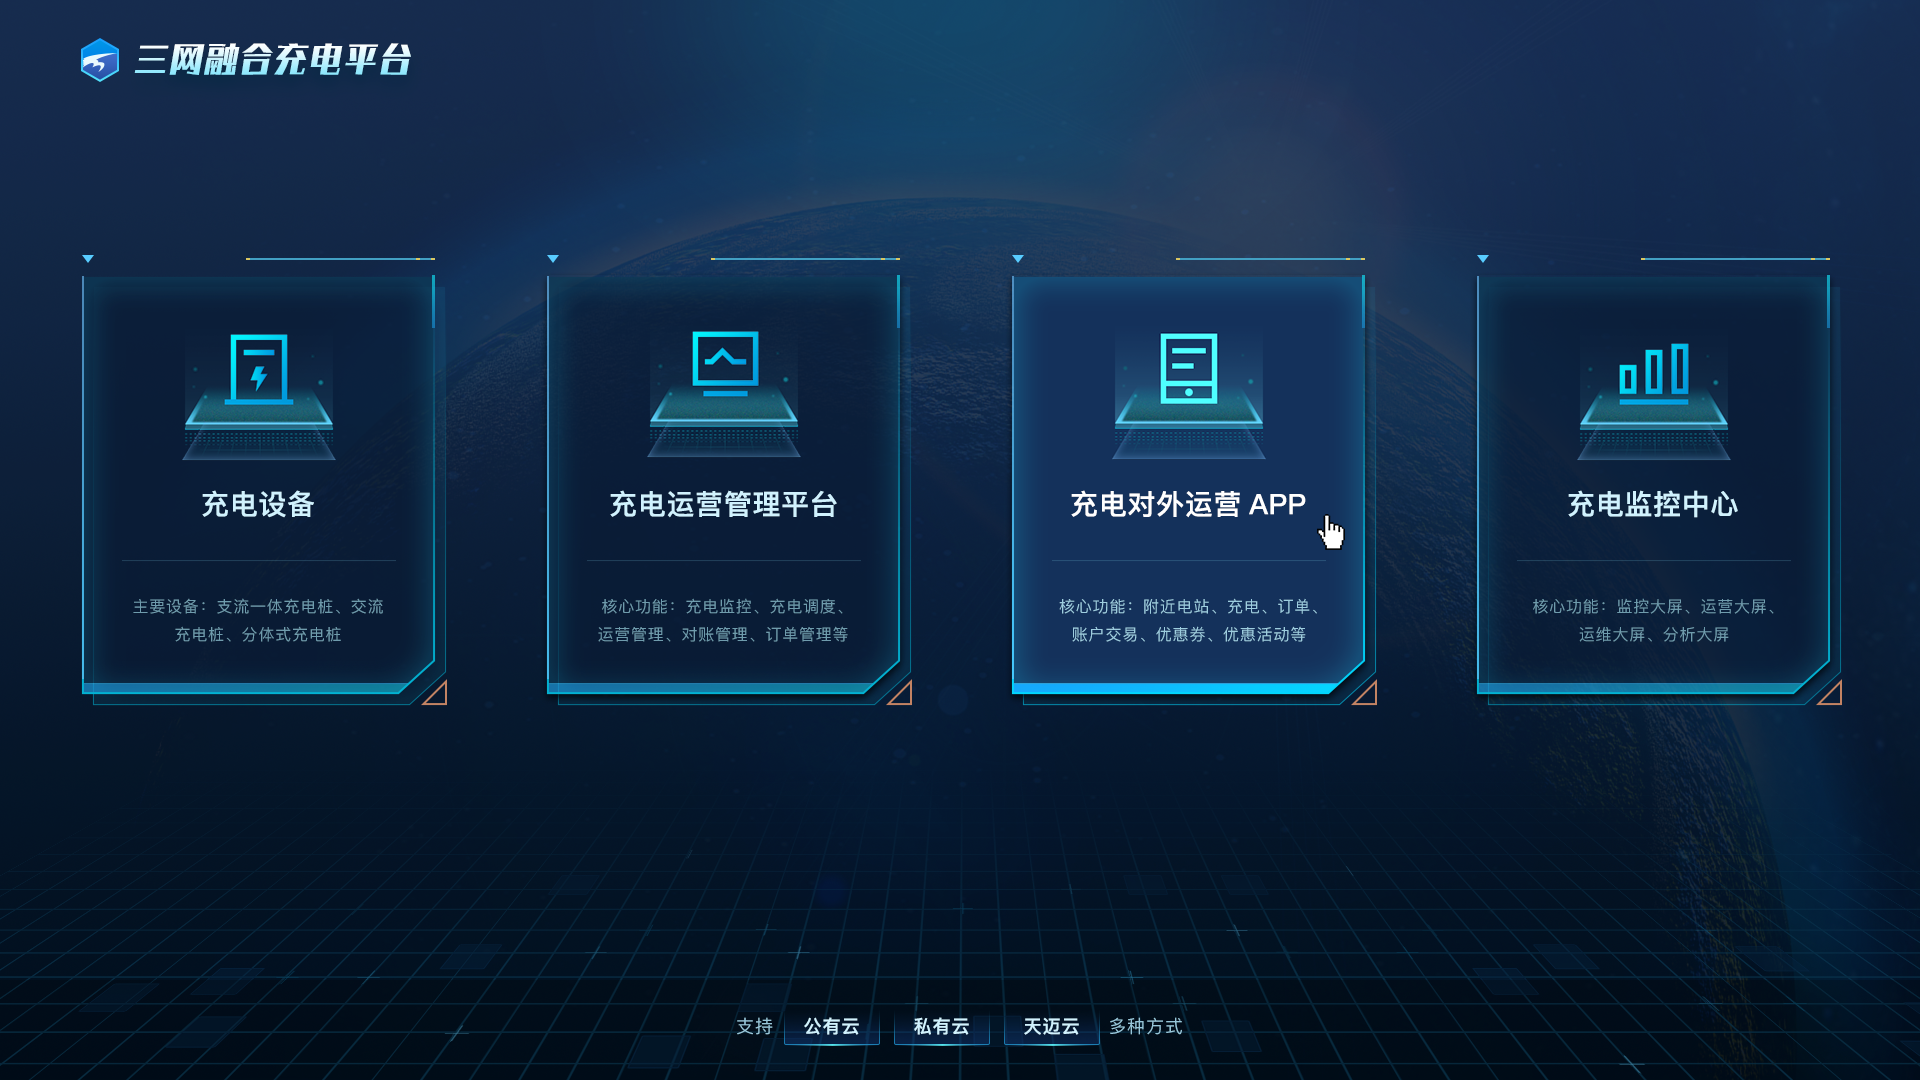 天迈科技荣获第四届中国工业互联网大赛优秀奖